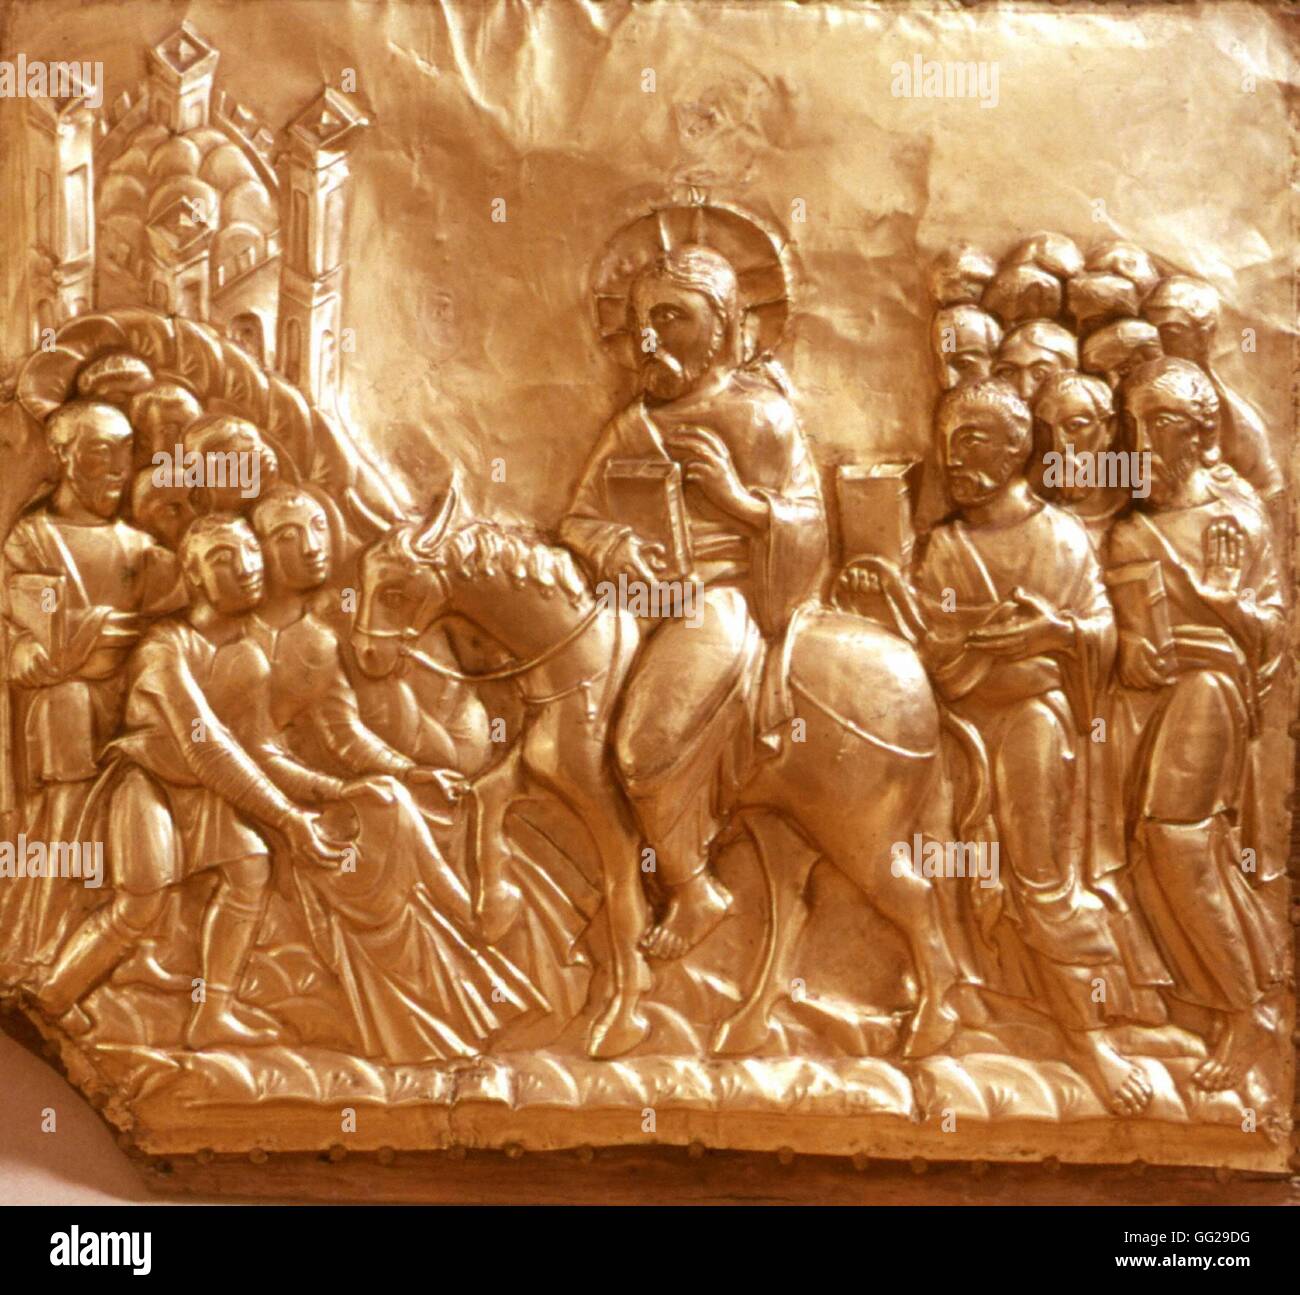 Pala d altare della Cattedrale di Aquisgrana in Germania (Pala d'oro). Dettaglio di una delle scene bibliche della Passione (qui Gesù entrando in Gerusalemme). Pala d'oro realizzato tra il 1000 e il 1020 e ha ricevuto come un dono da Otto III. Foto Stock